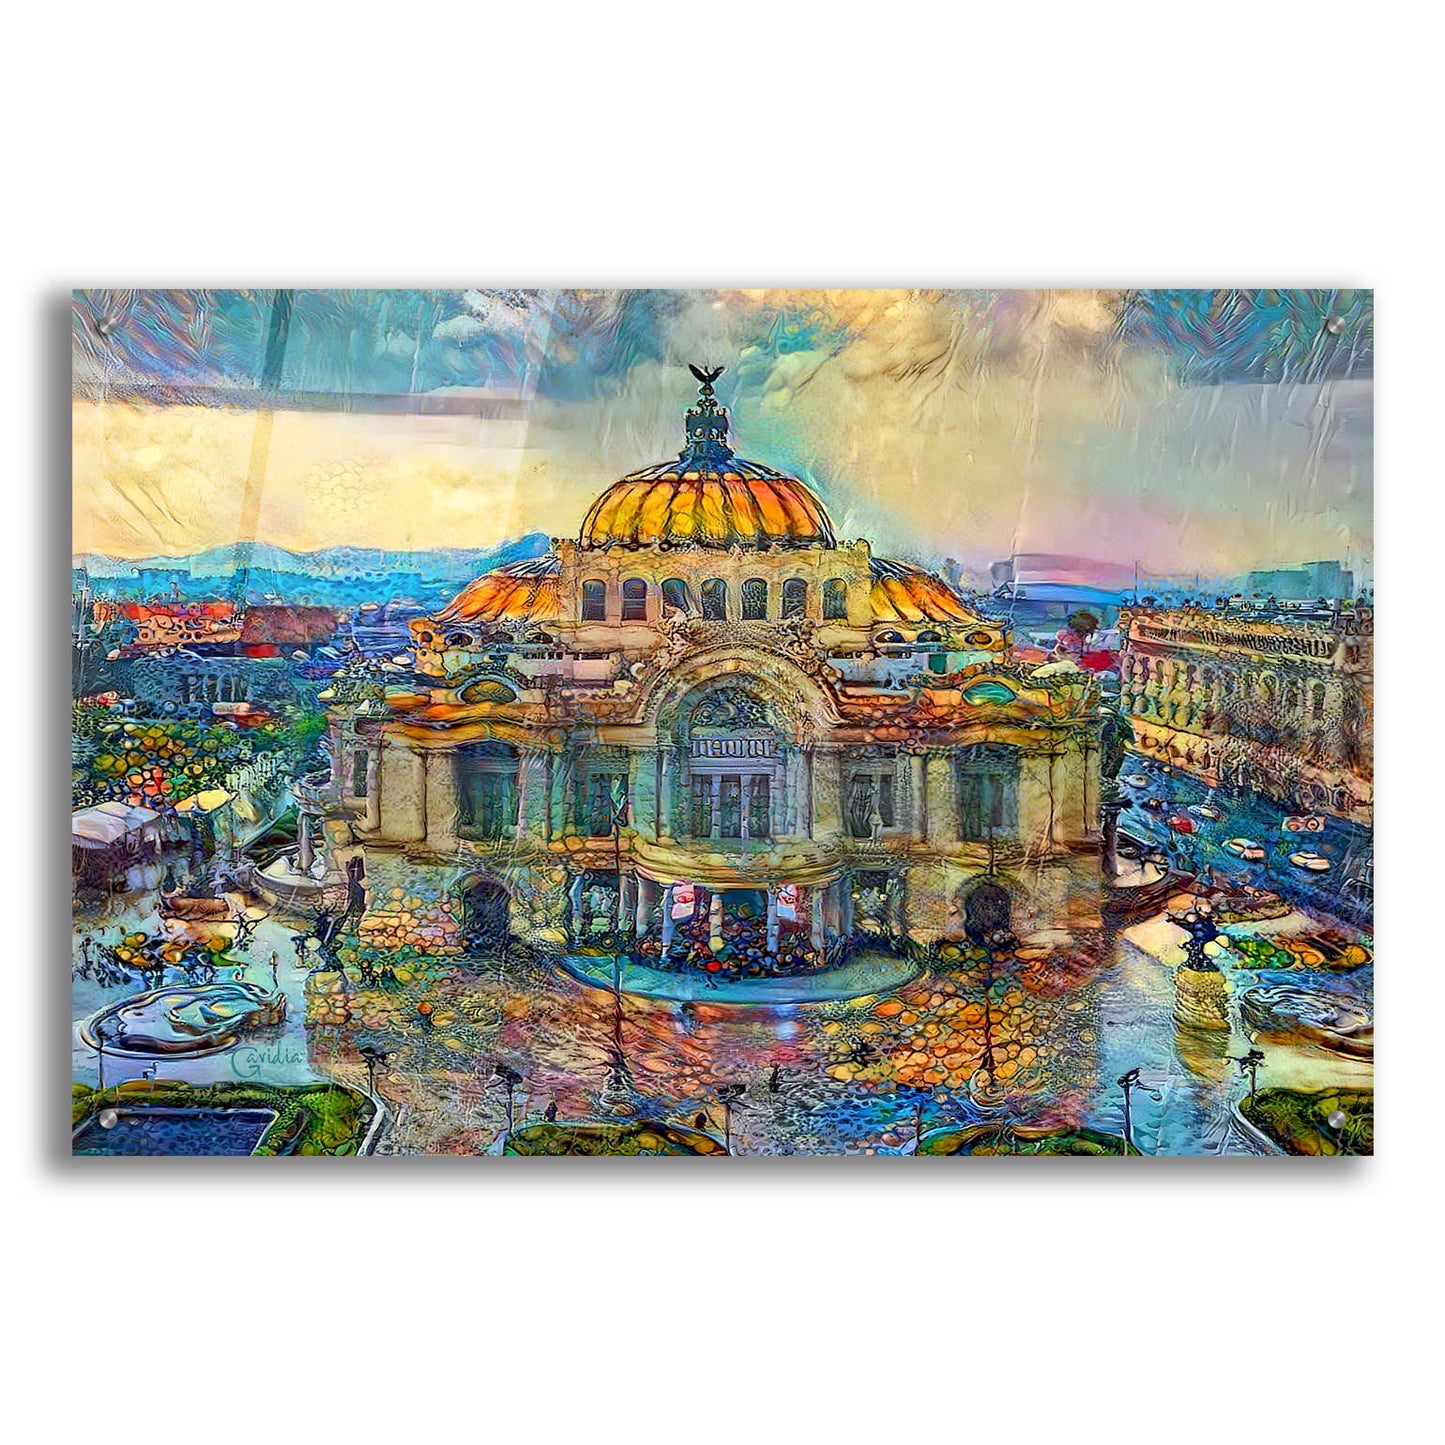 Epic Art 'Mexico City Palace of Fine Arts in the rain' by Pedro Gavidia, Acrylic Glass Wall Art,36x24